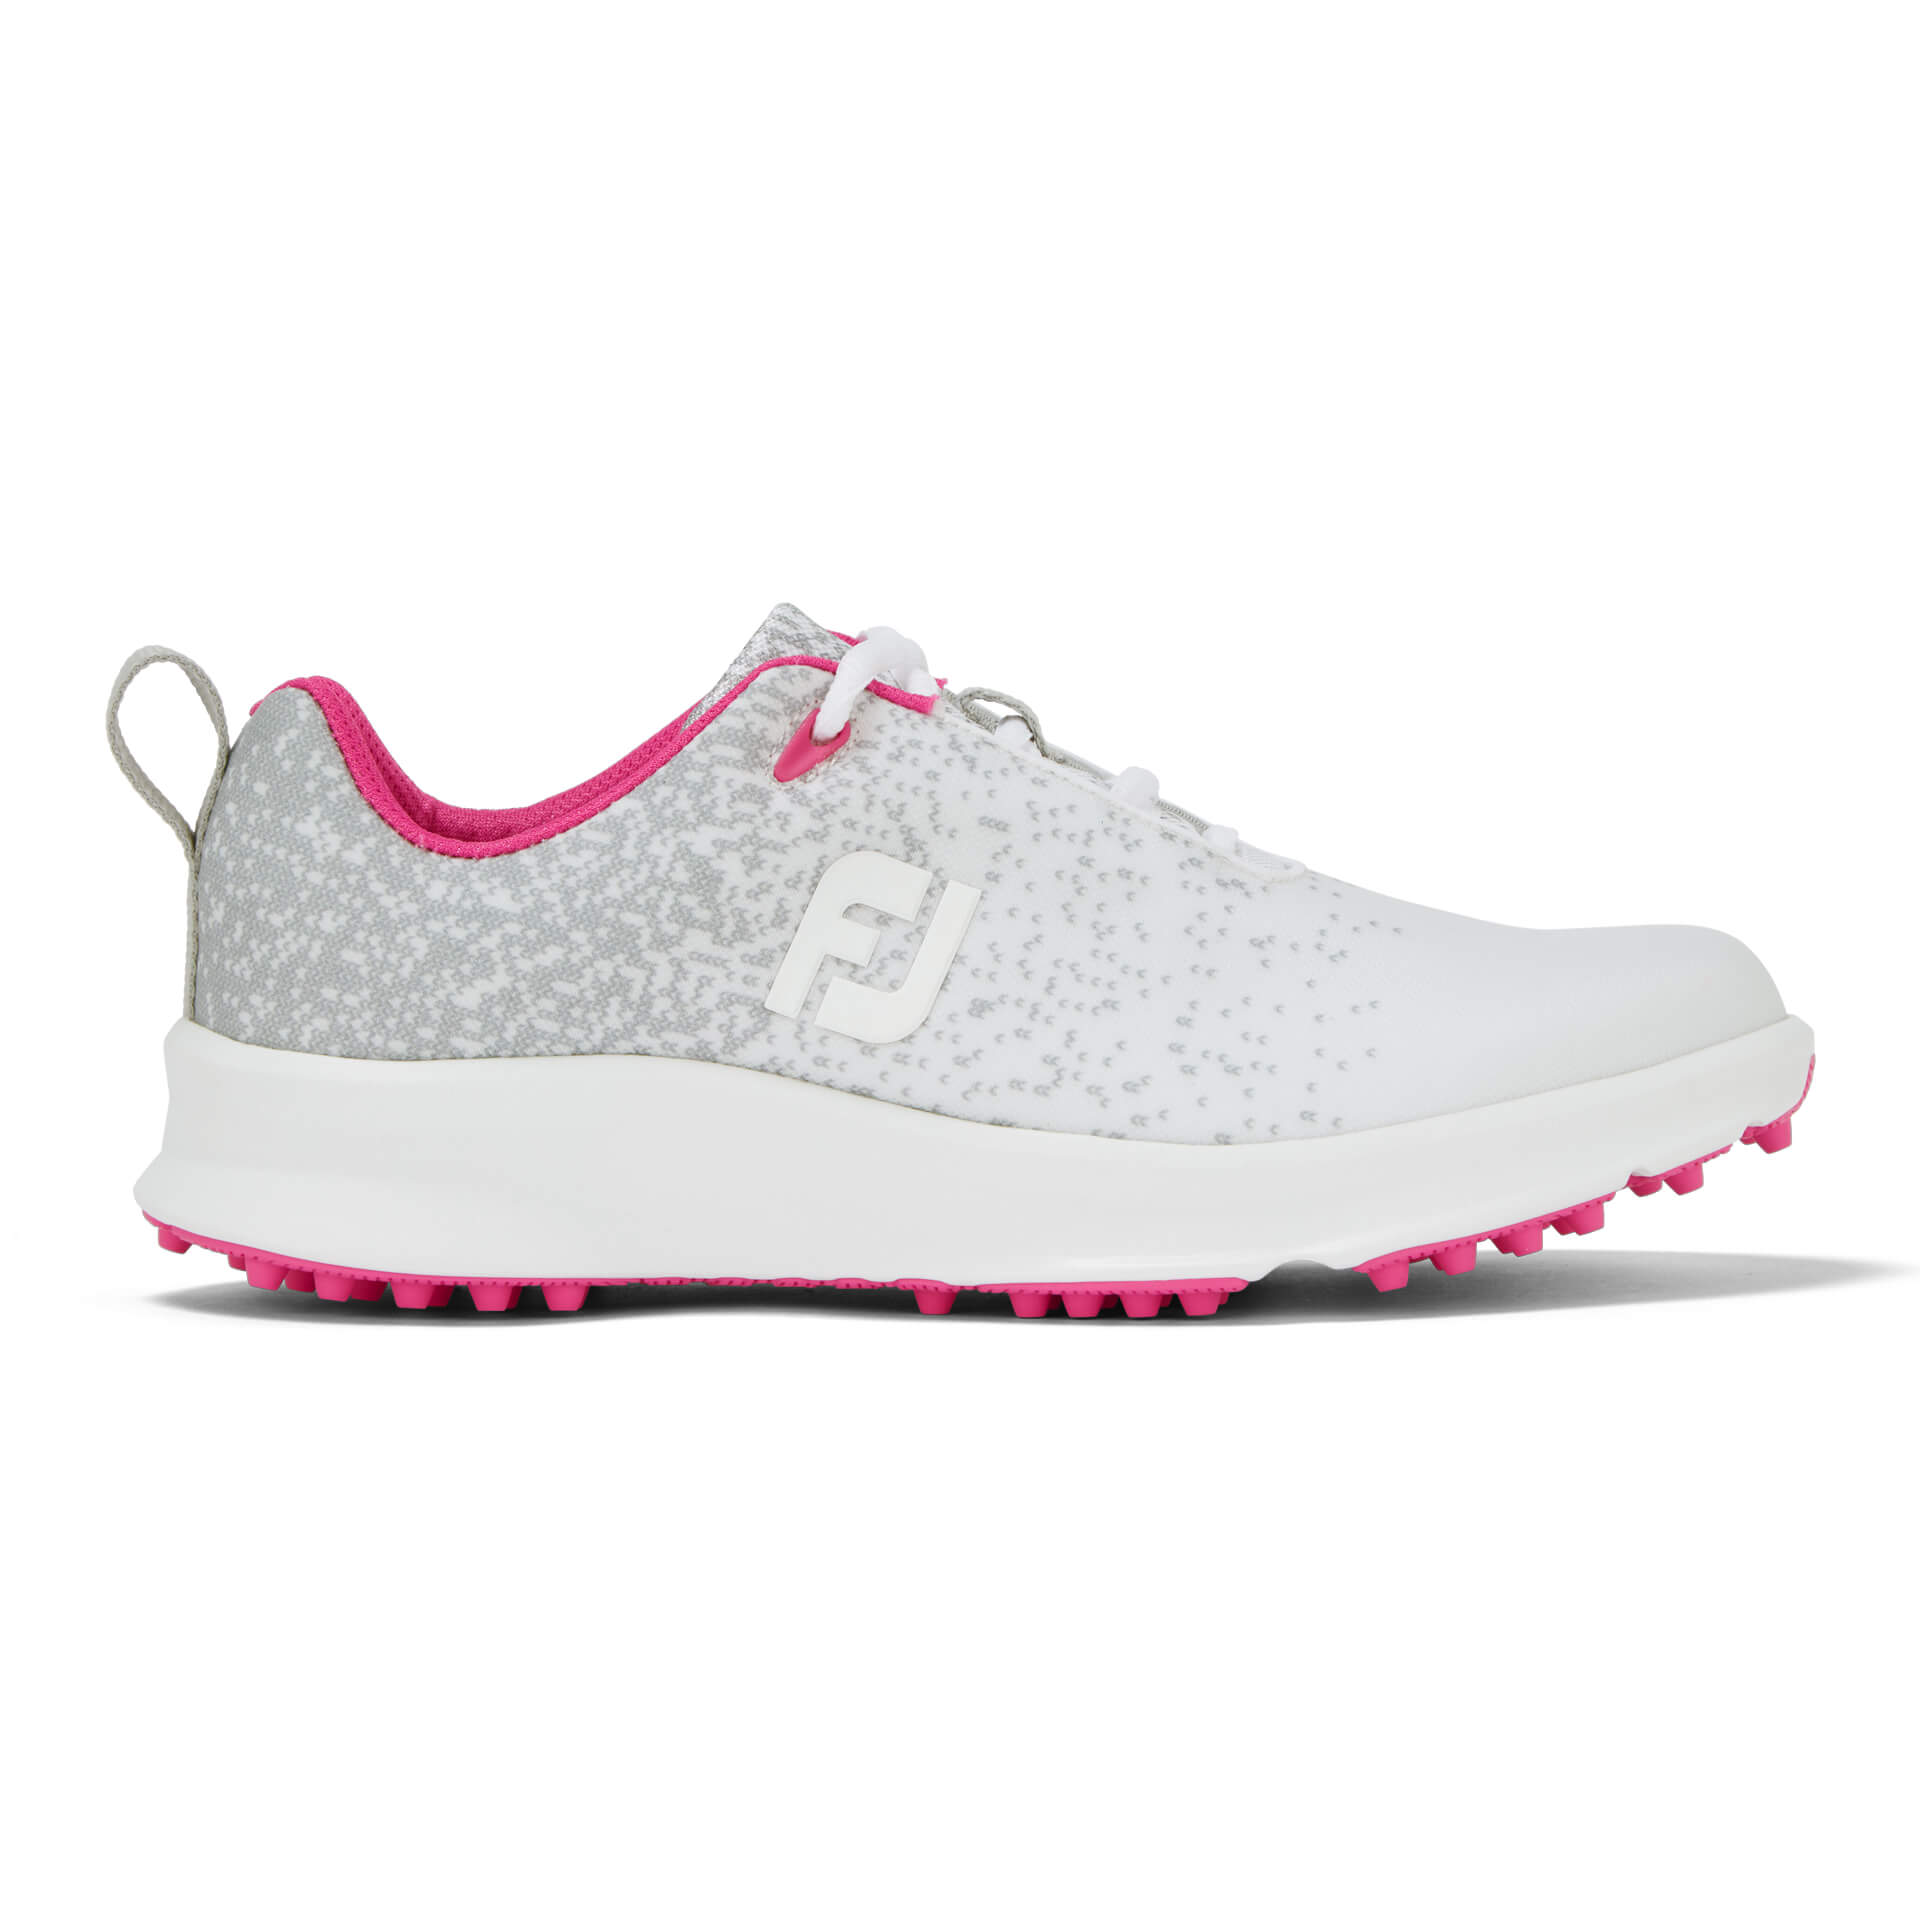 FootJoy Leisure Ladies Silver/White/Fushsia Shoes